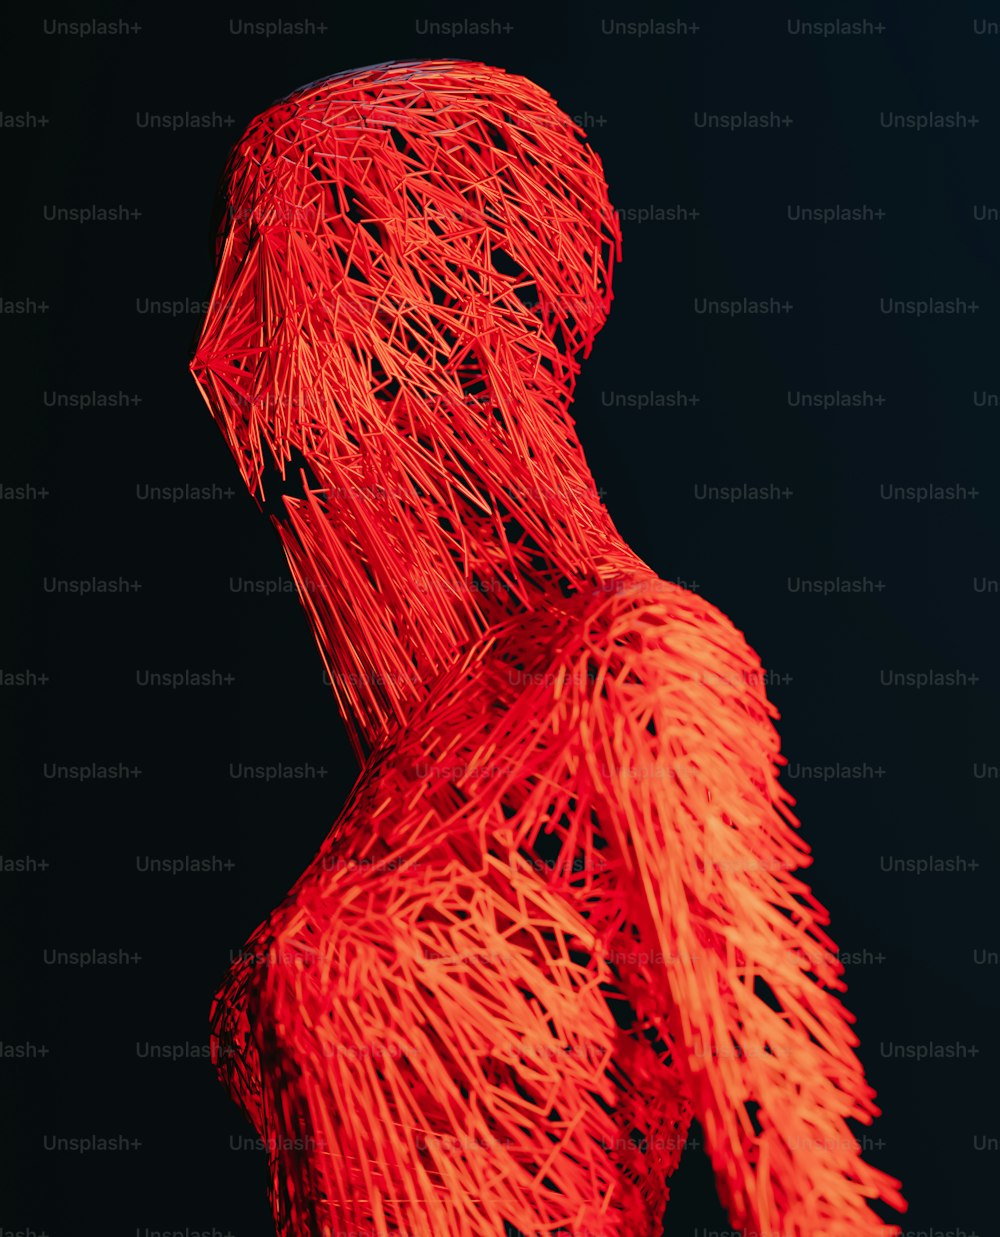 Una scultura rossa di una persona con i capelli lunghi